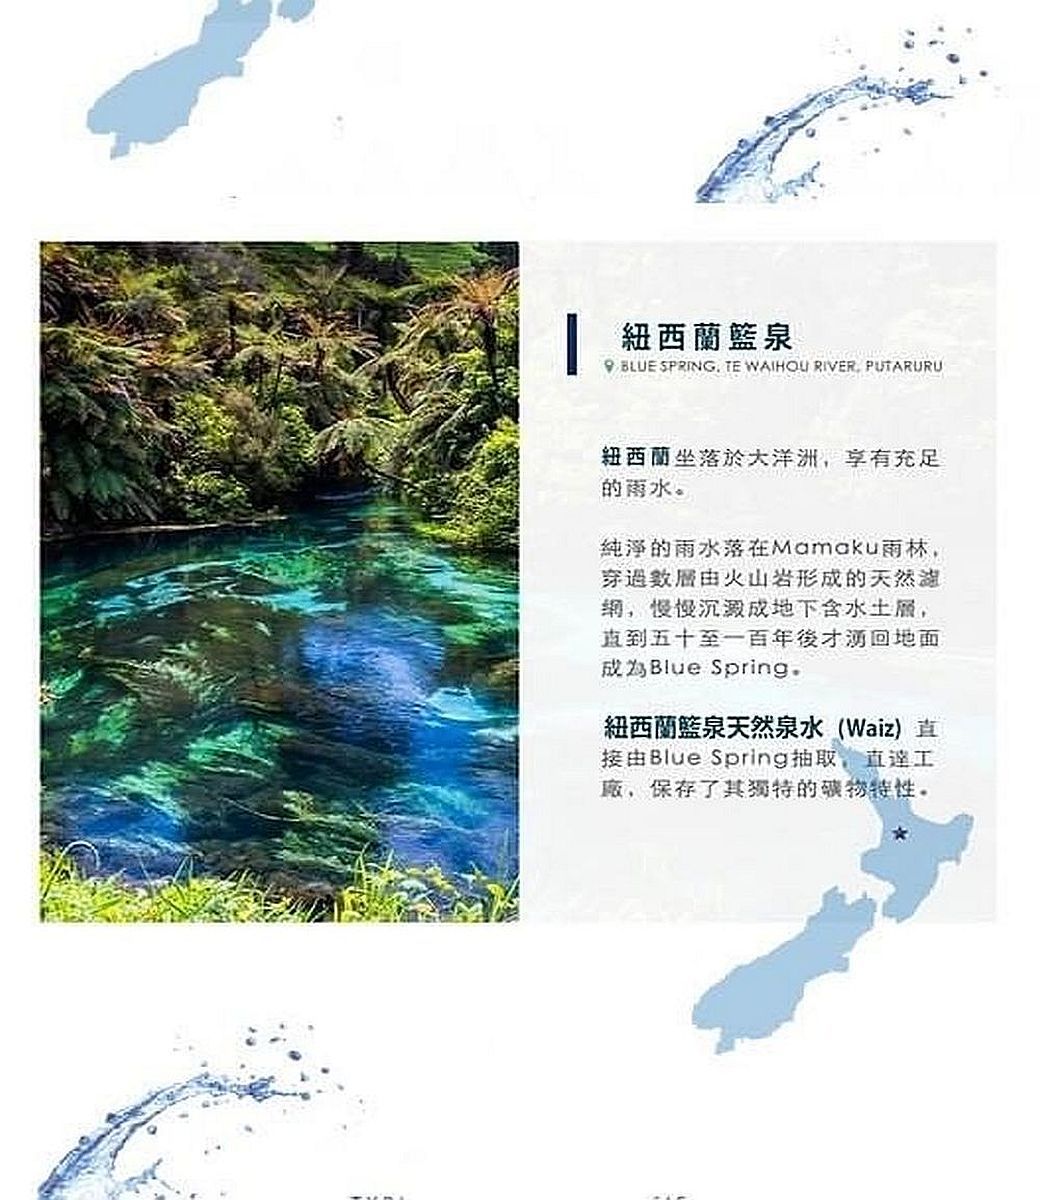 紐西蘭泉 BLUE SPRING TE WAIHOU RIVER. PUTARURU紐西蘭坐落於大洋洲,享有充足的雨水。純淨的雨水落在Mamaku雨林,穿過層火山岩形成的天然湖,慢慢沉澱成地下含水,直到五十至一百年後才回地面Blue Spring.紐西蘭泉天然泉水(Waiz)直由Blue Spring抽取,直達工廠,保存了其獨特的特性。